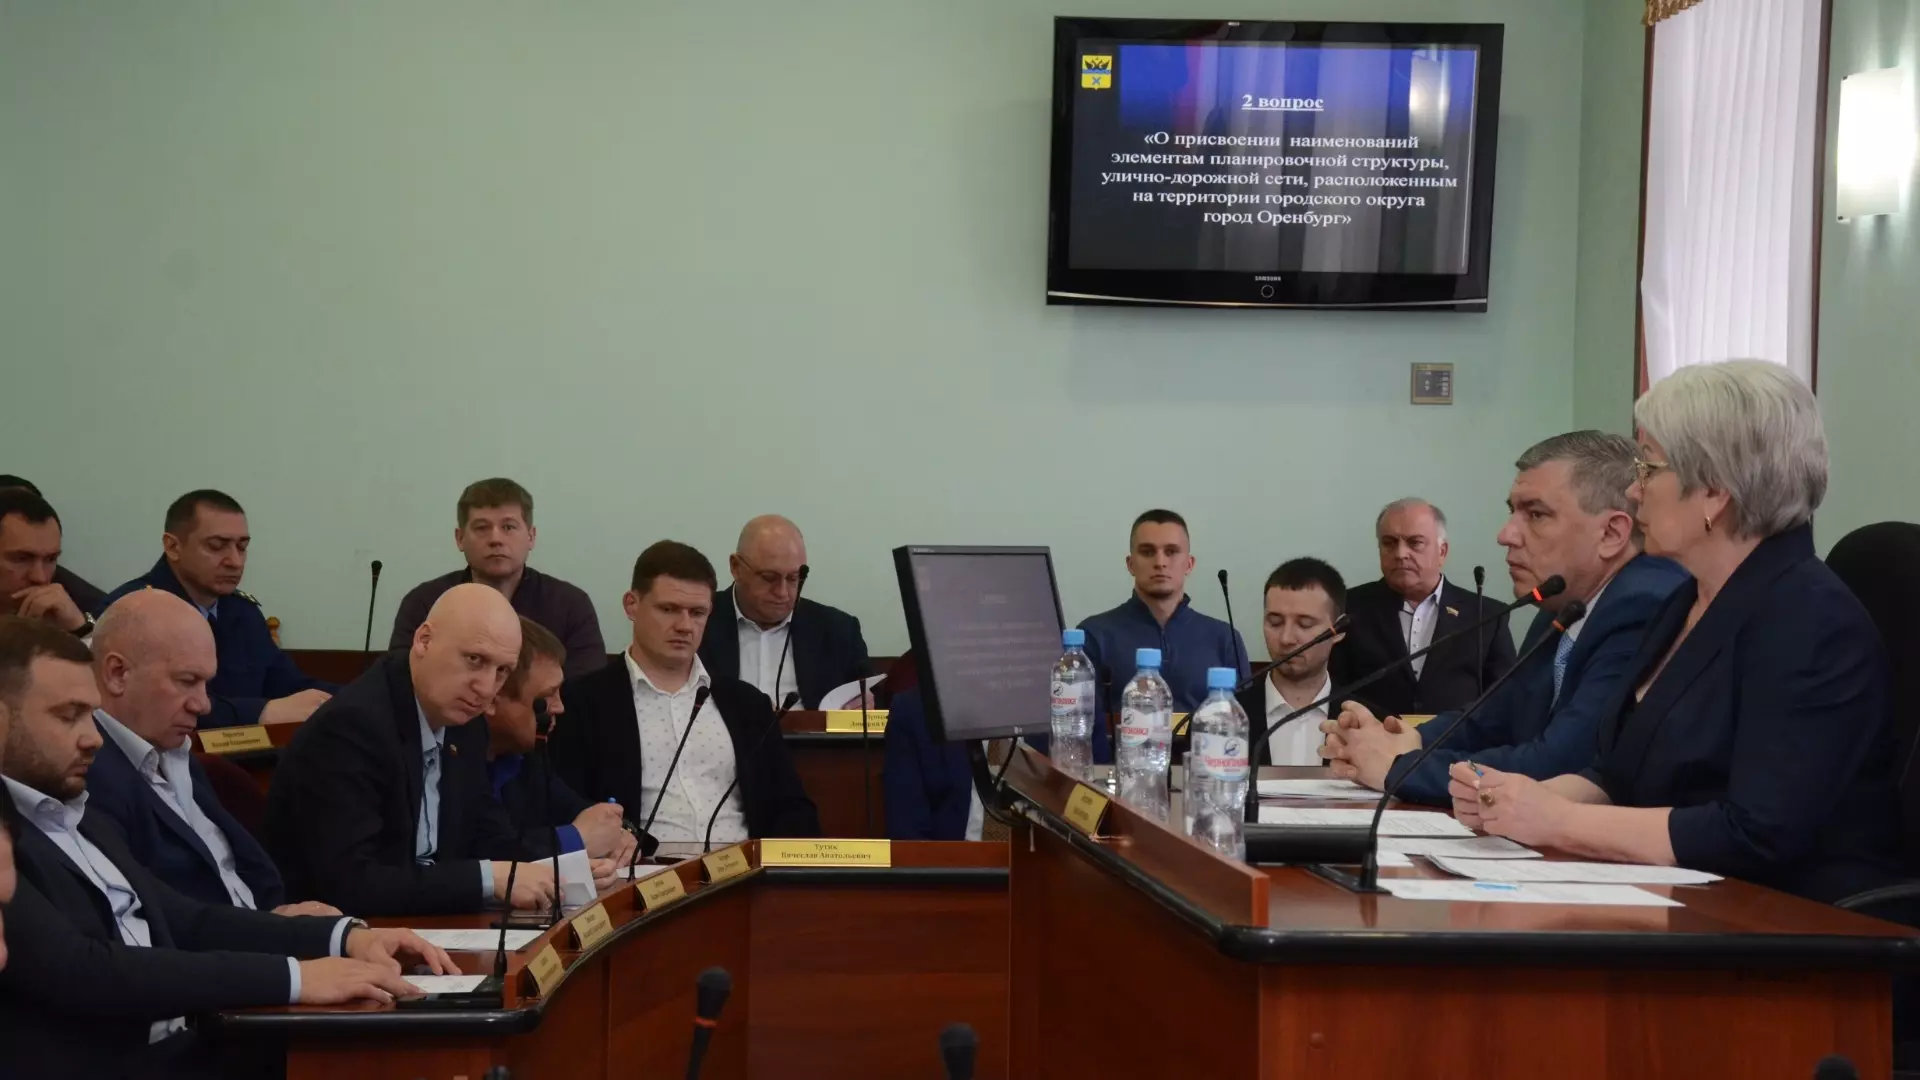 Оренбургский городской Совет провел 30-е внеочередное заседание